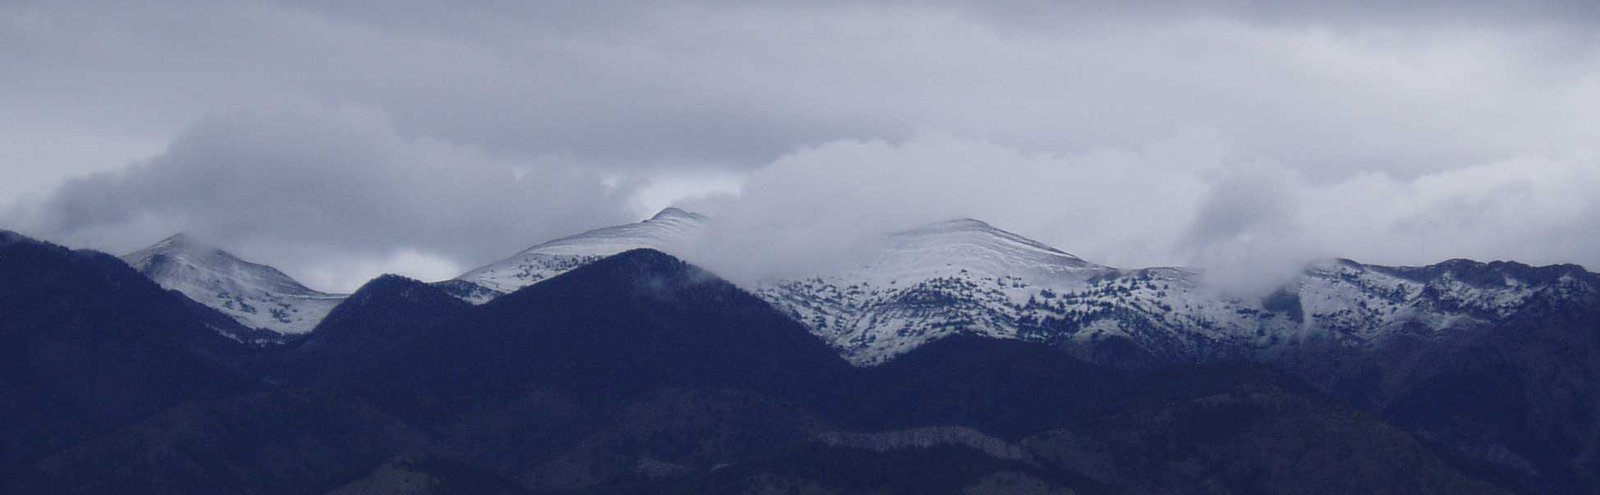 Sacajawea Peak, first snow of the season!